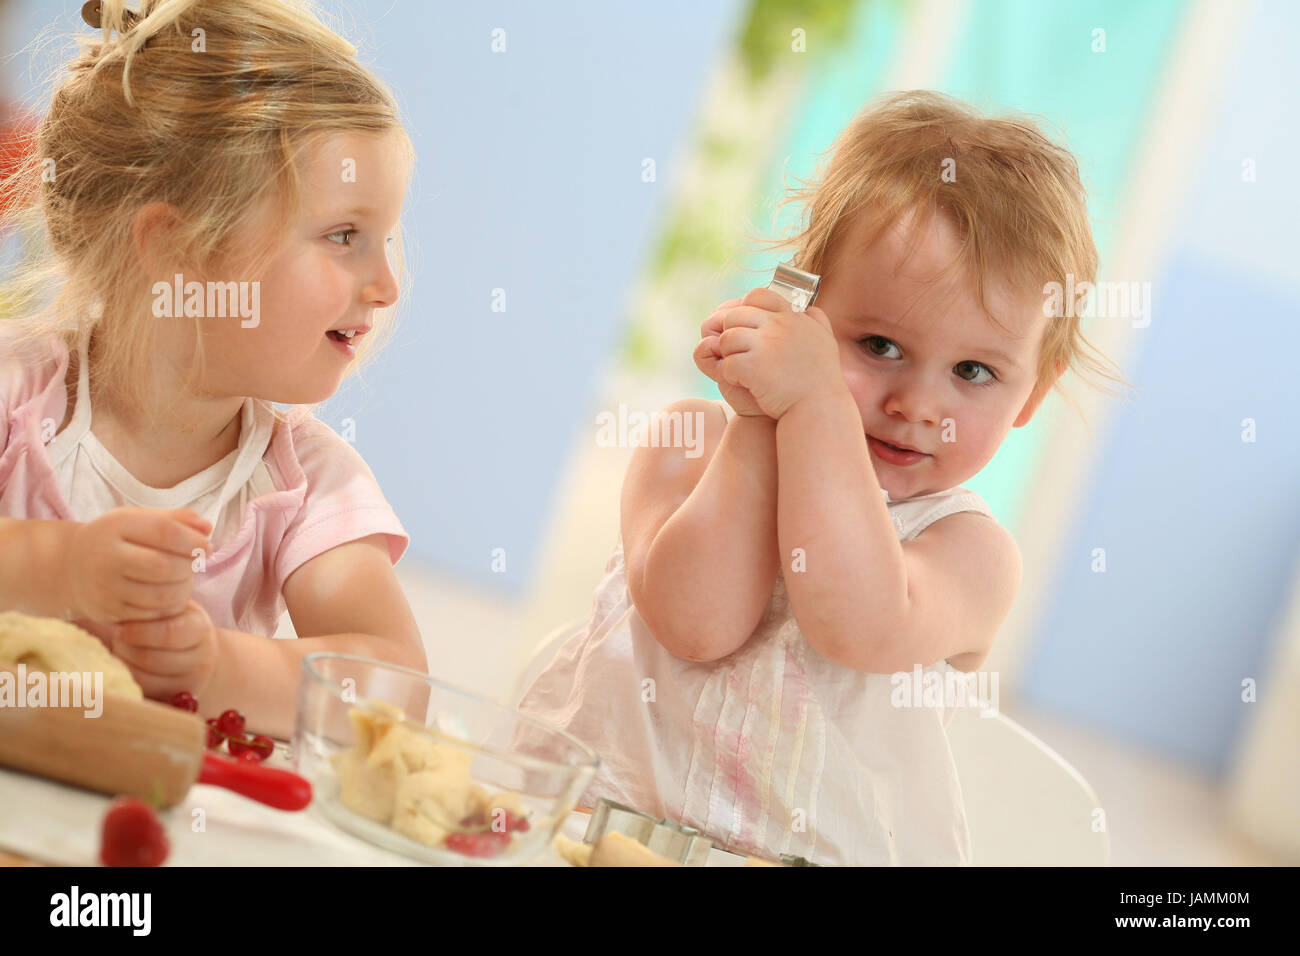 Los niños,cocina,poco lugares bake, Foto de stock